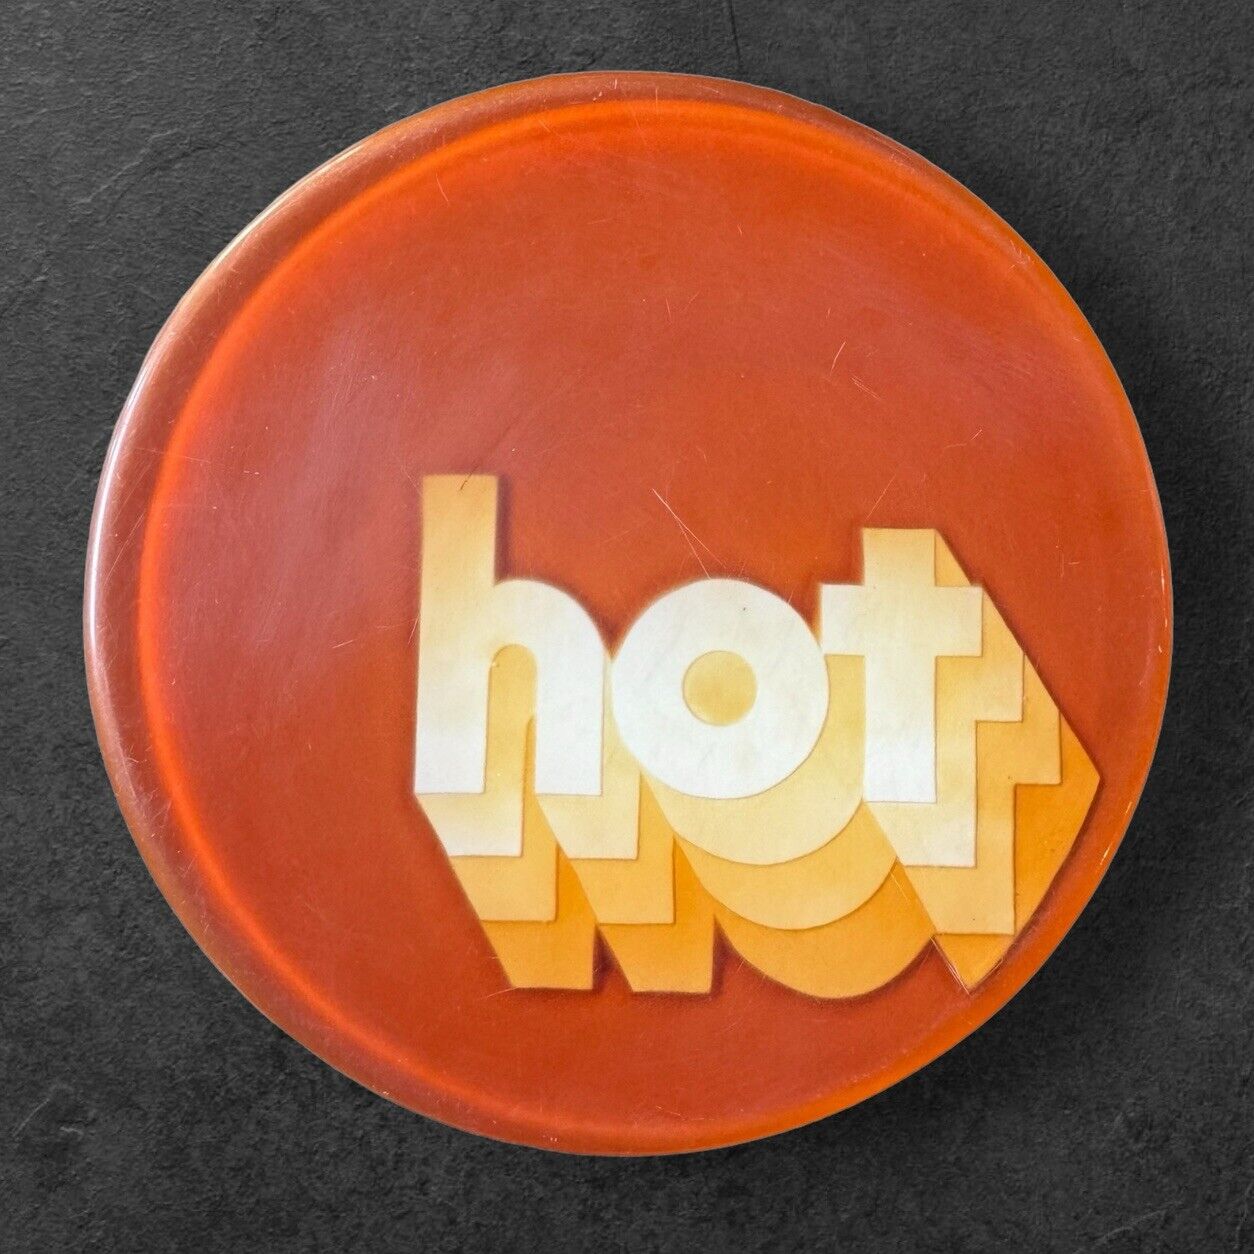 Vintage Lucite Acrylic Orange Round Hot Plate MCM Retro 1960’s 8” Diameter